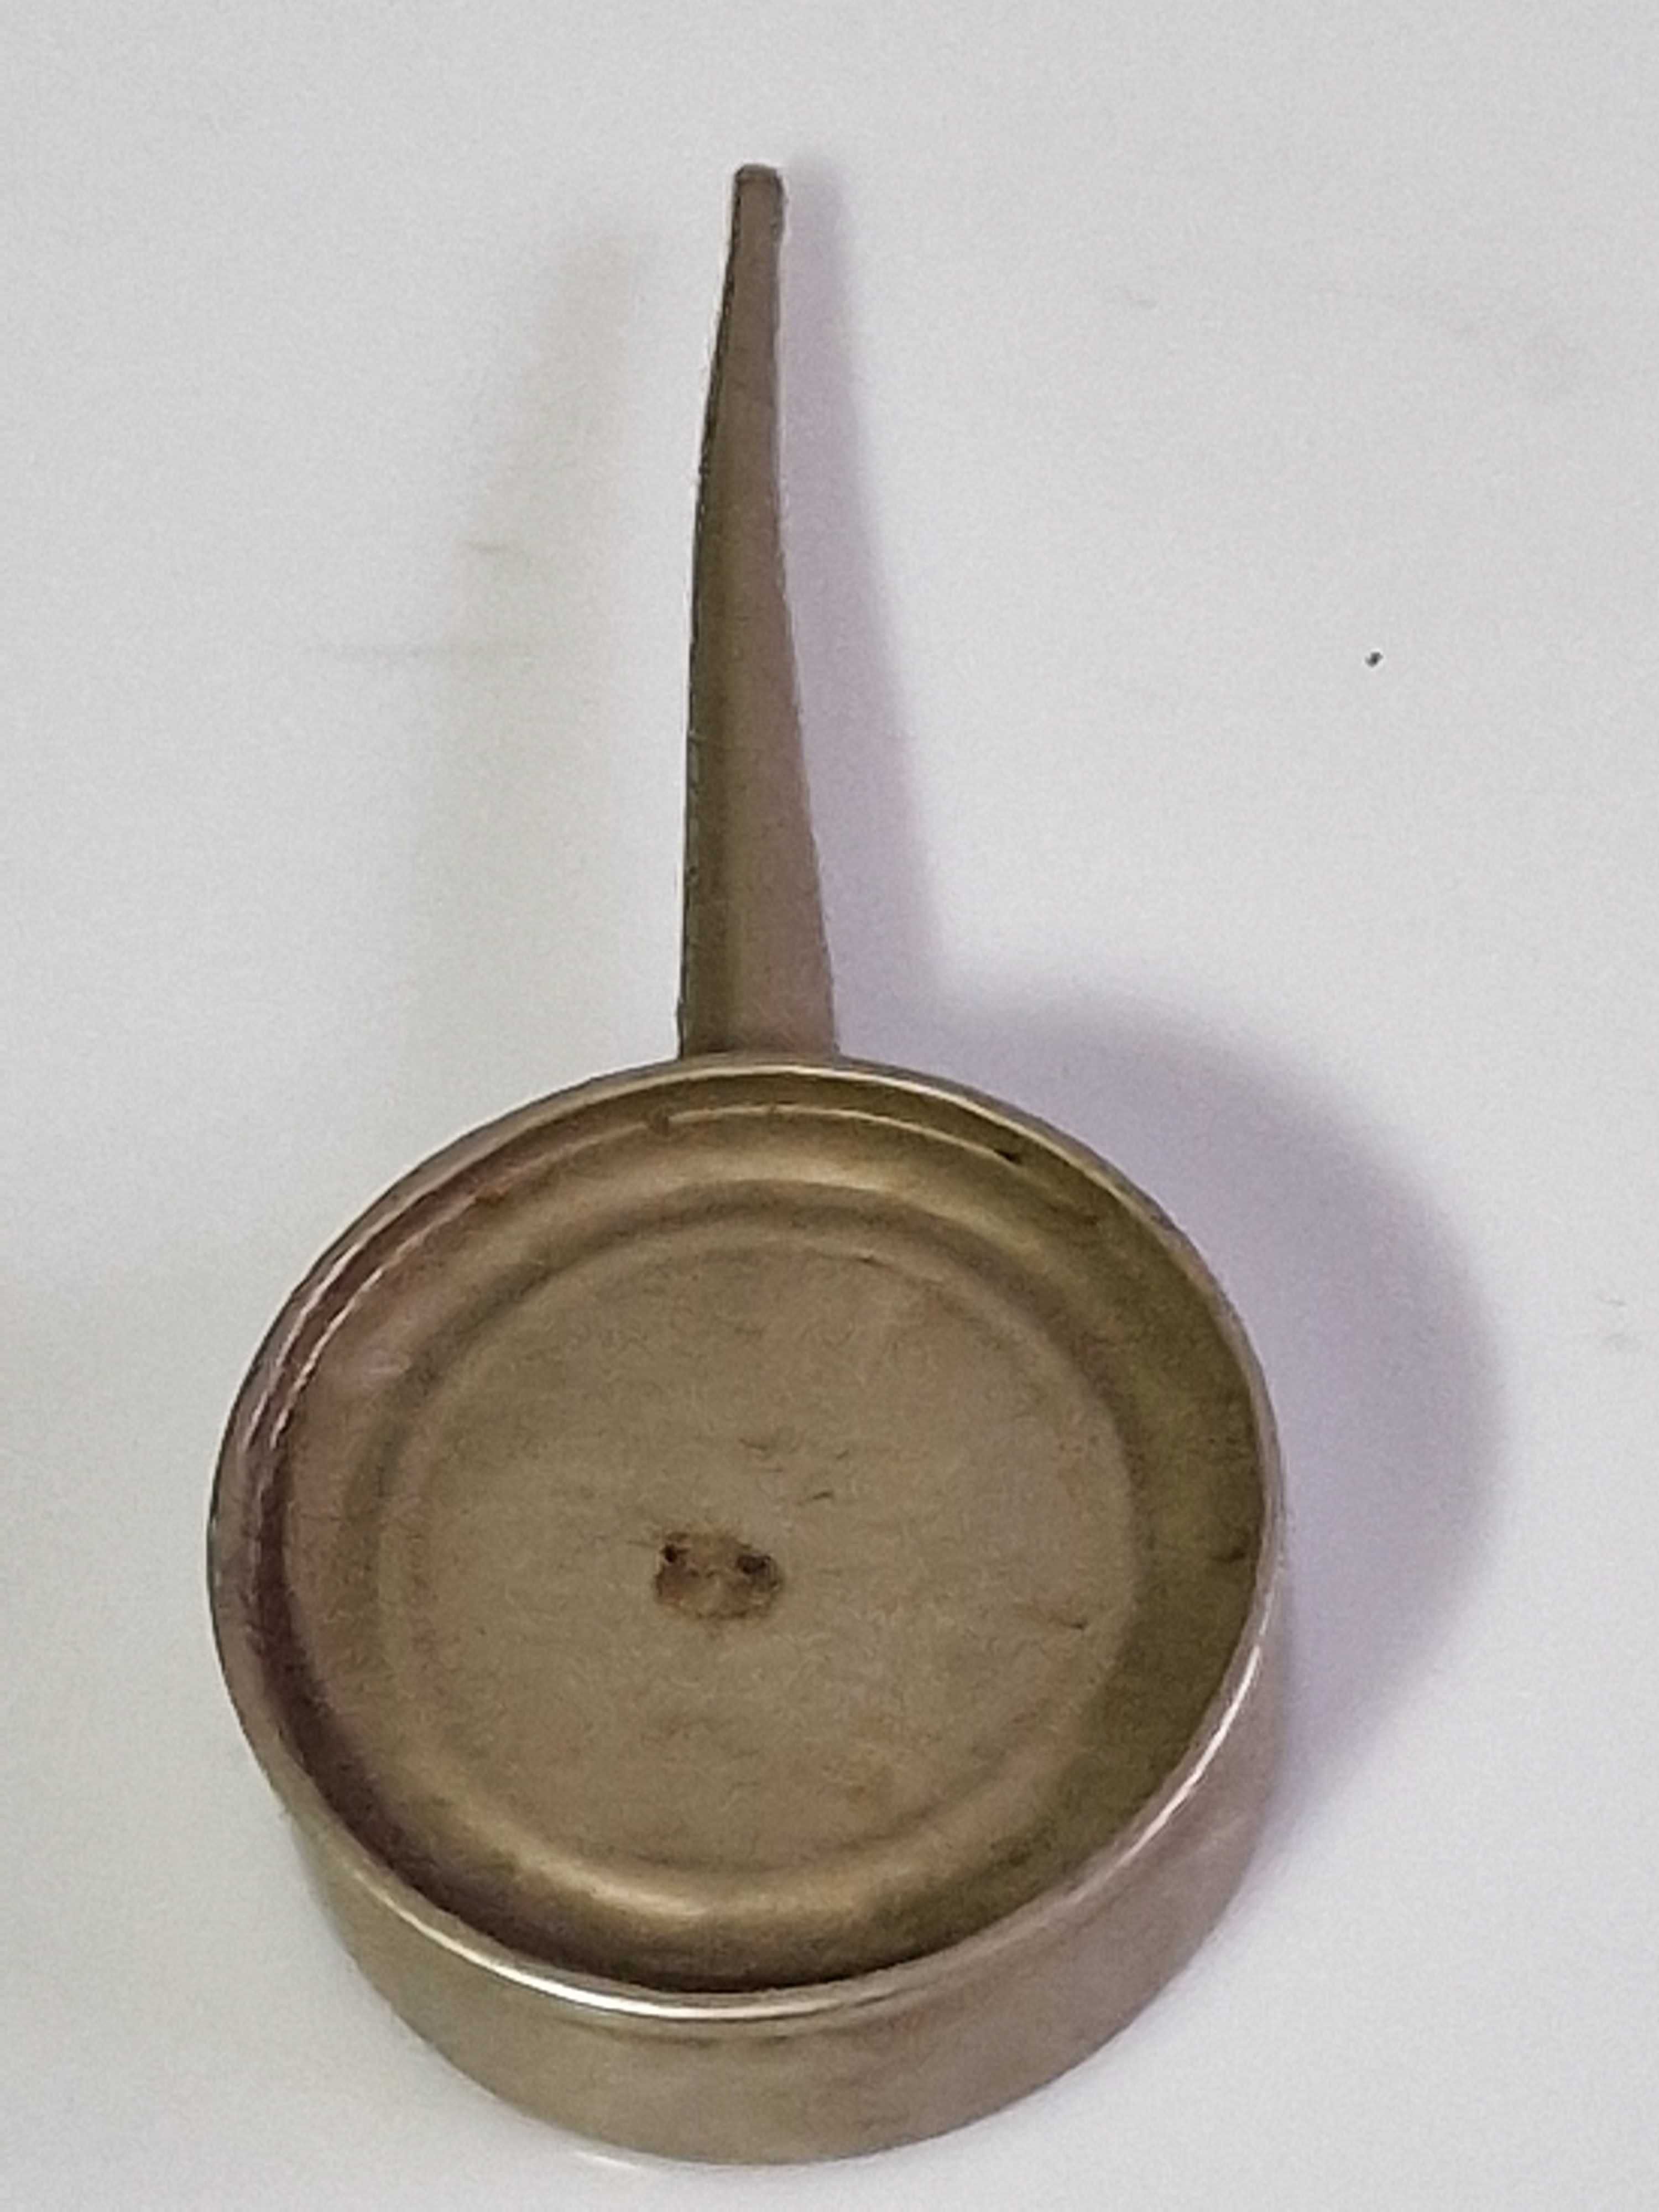 Stara oliwiarka mała metalowa  kolekcjonerska  i użytkowa